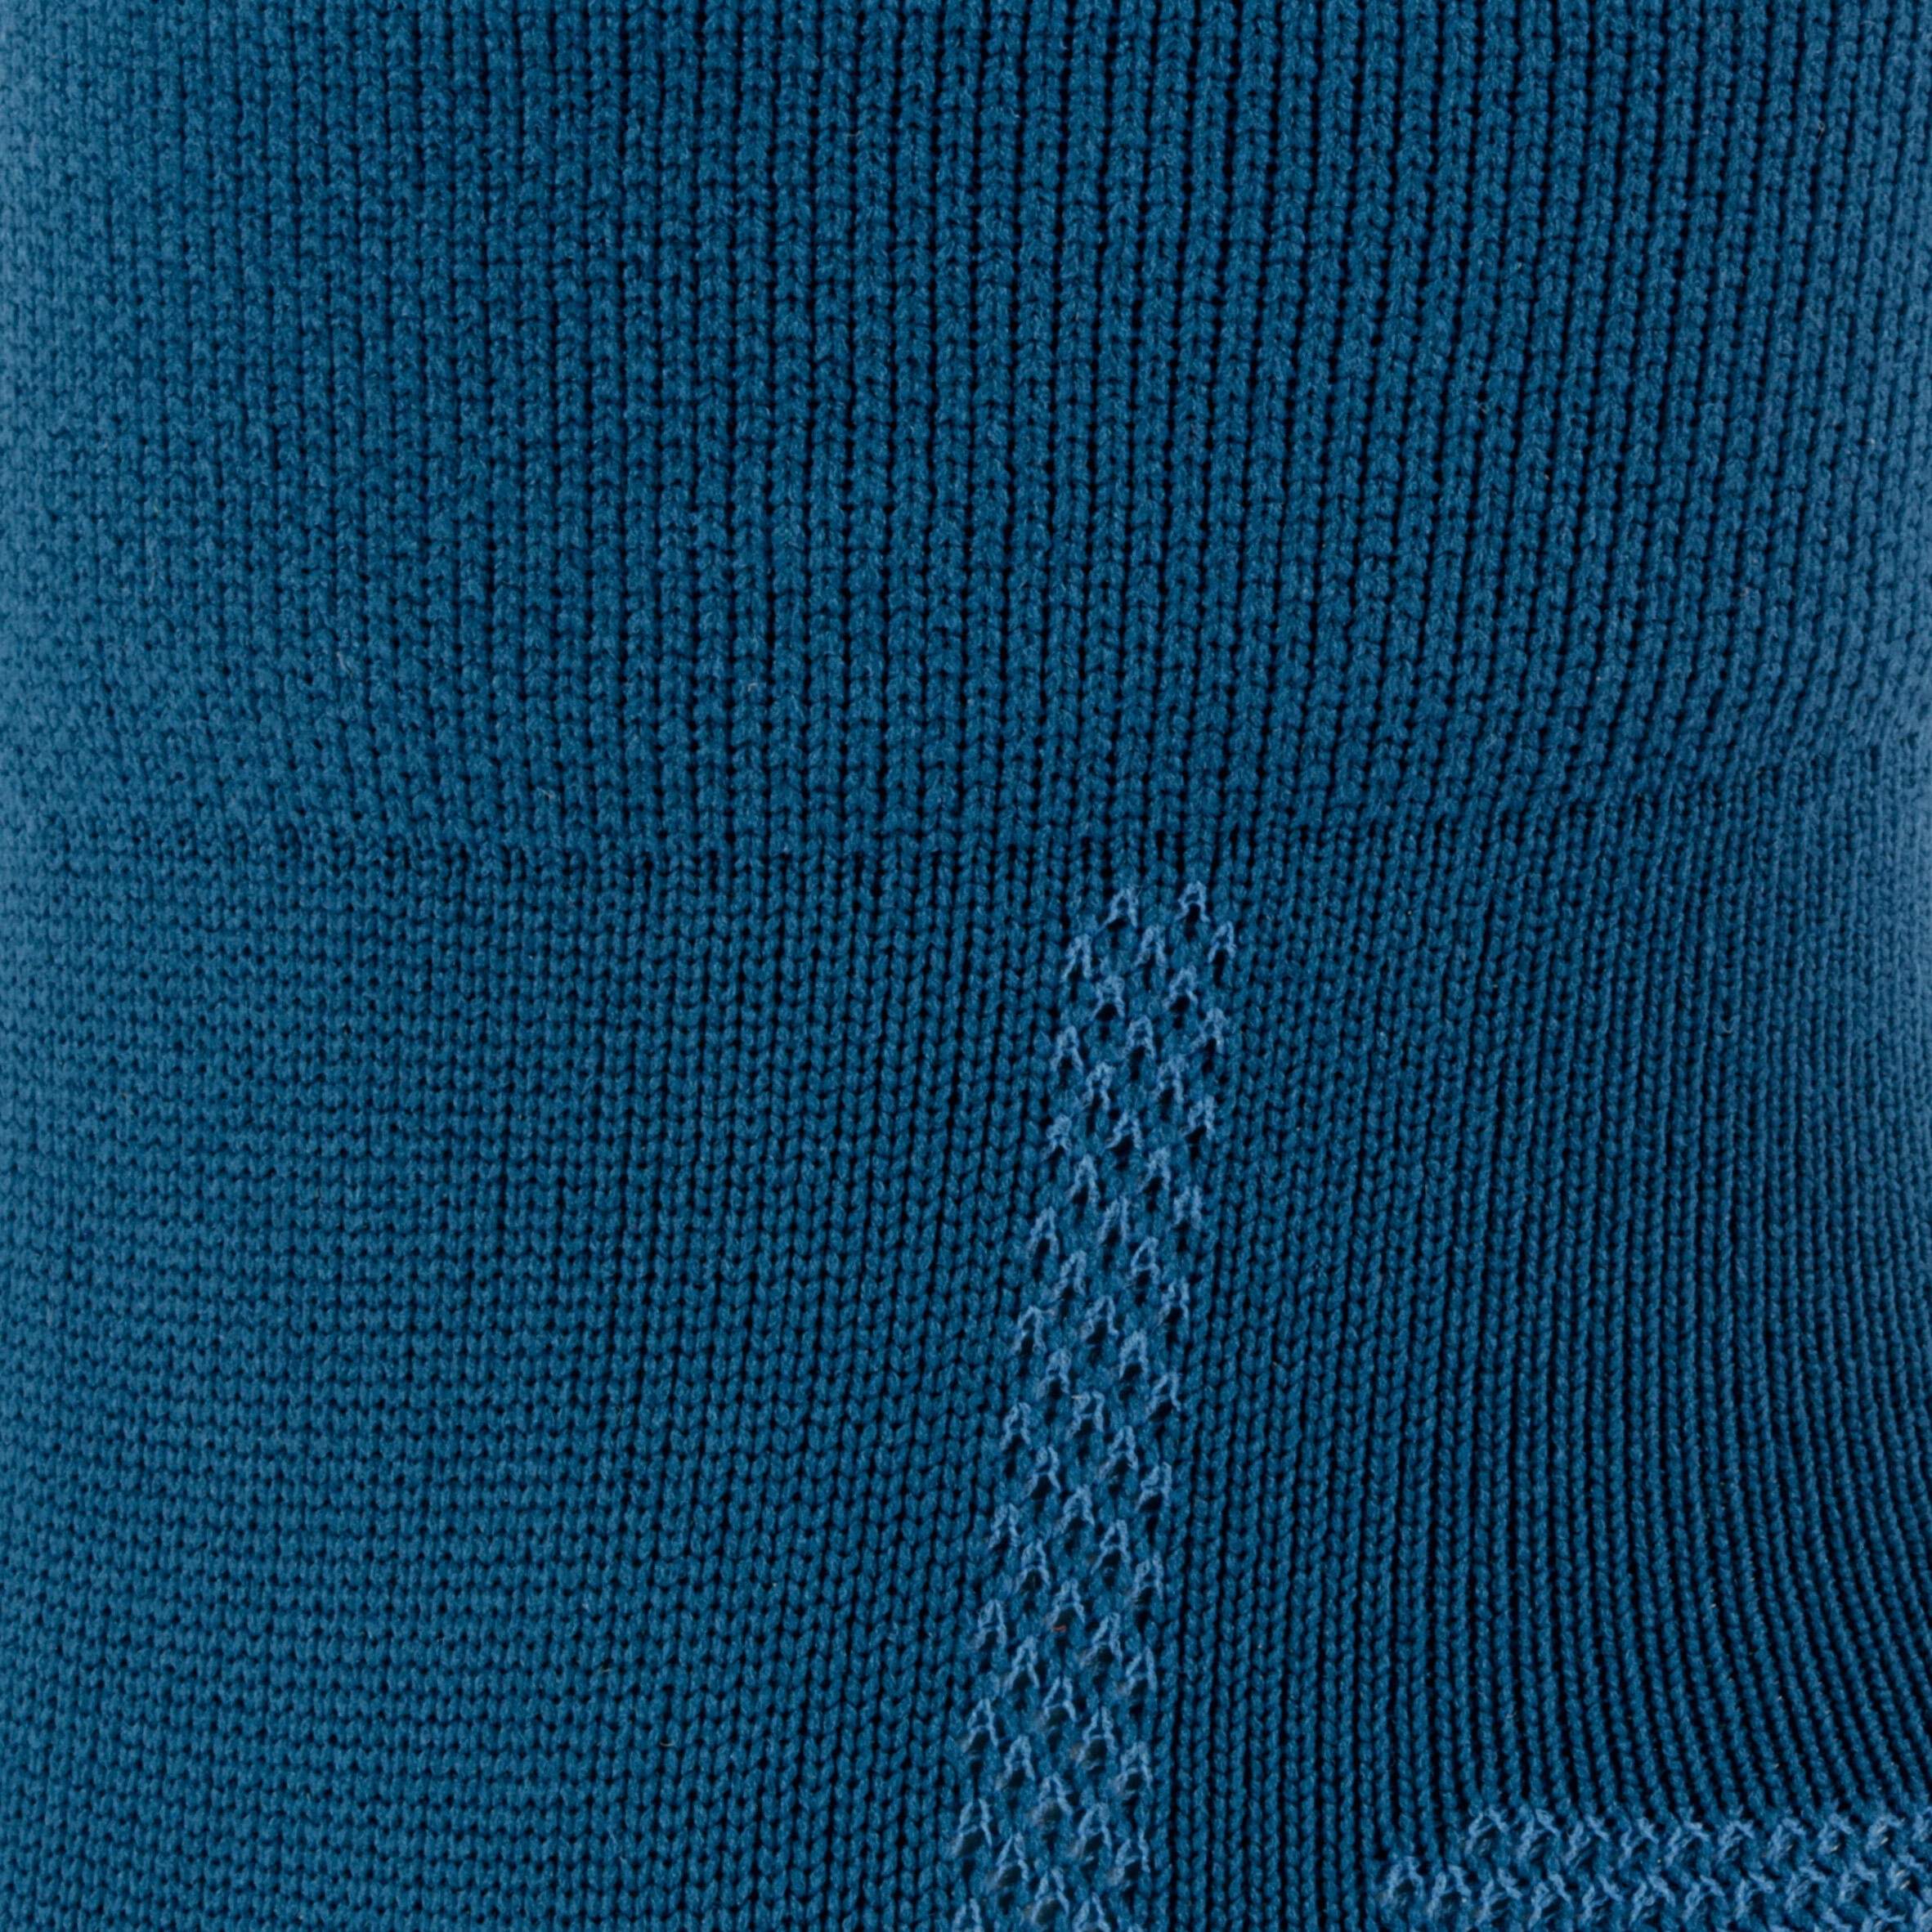 500 Cycling Socks - Dark Blue 7/8